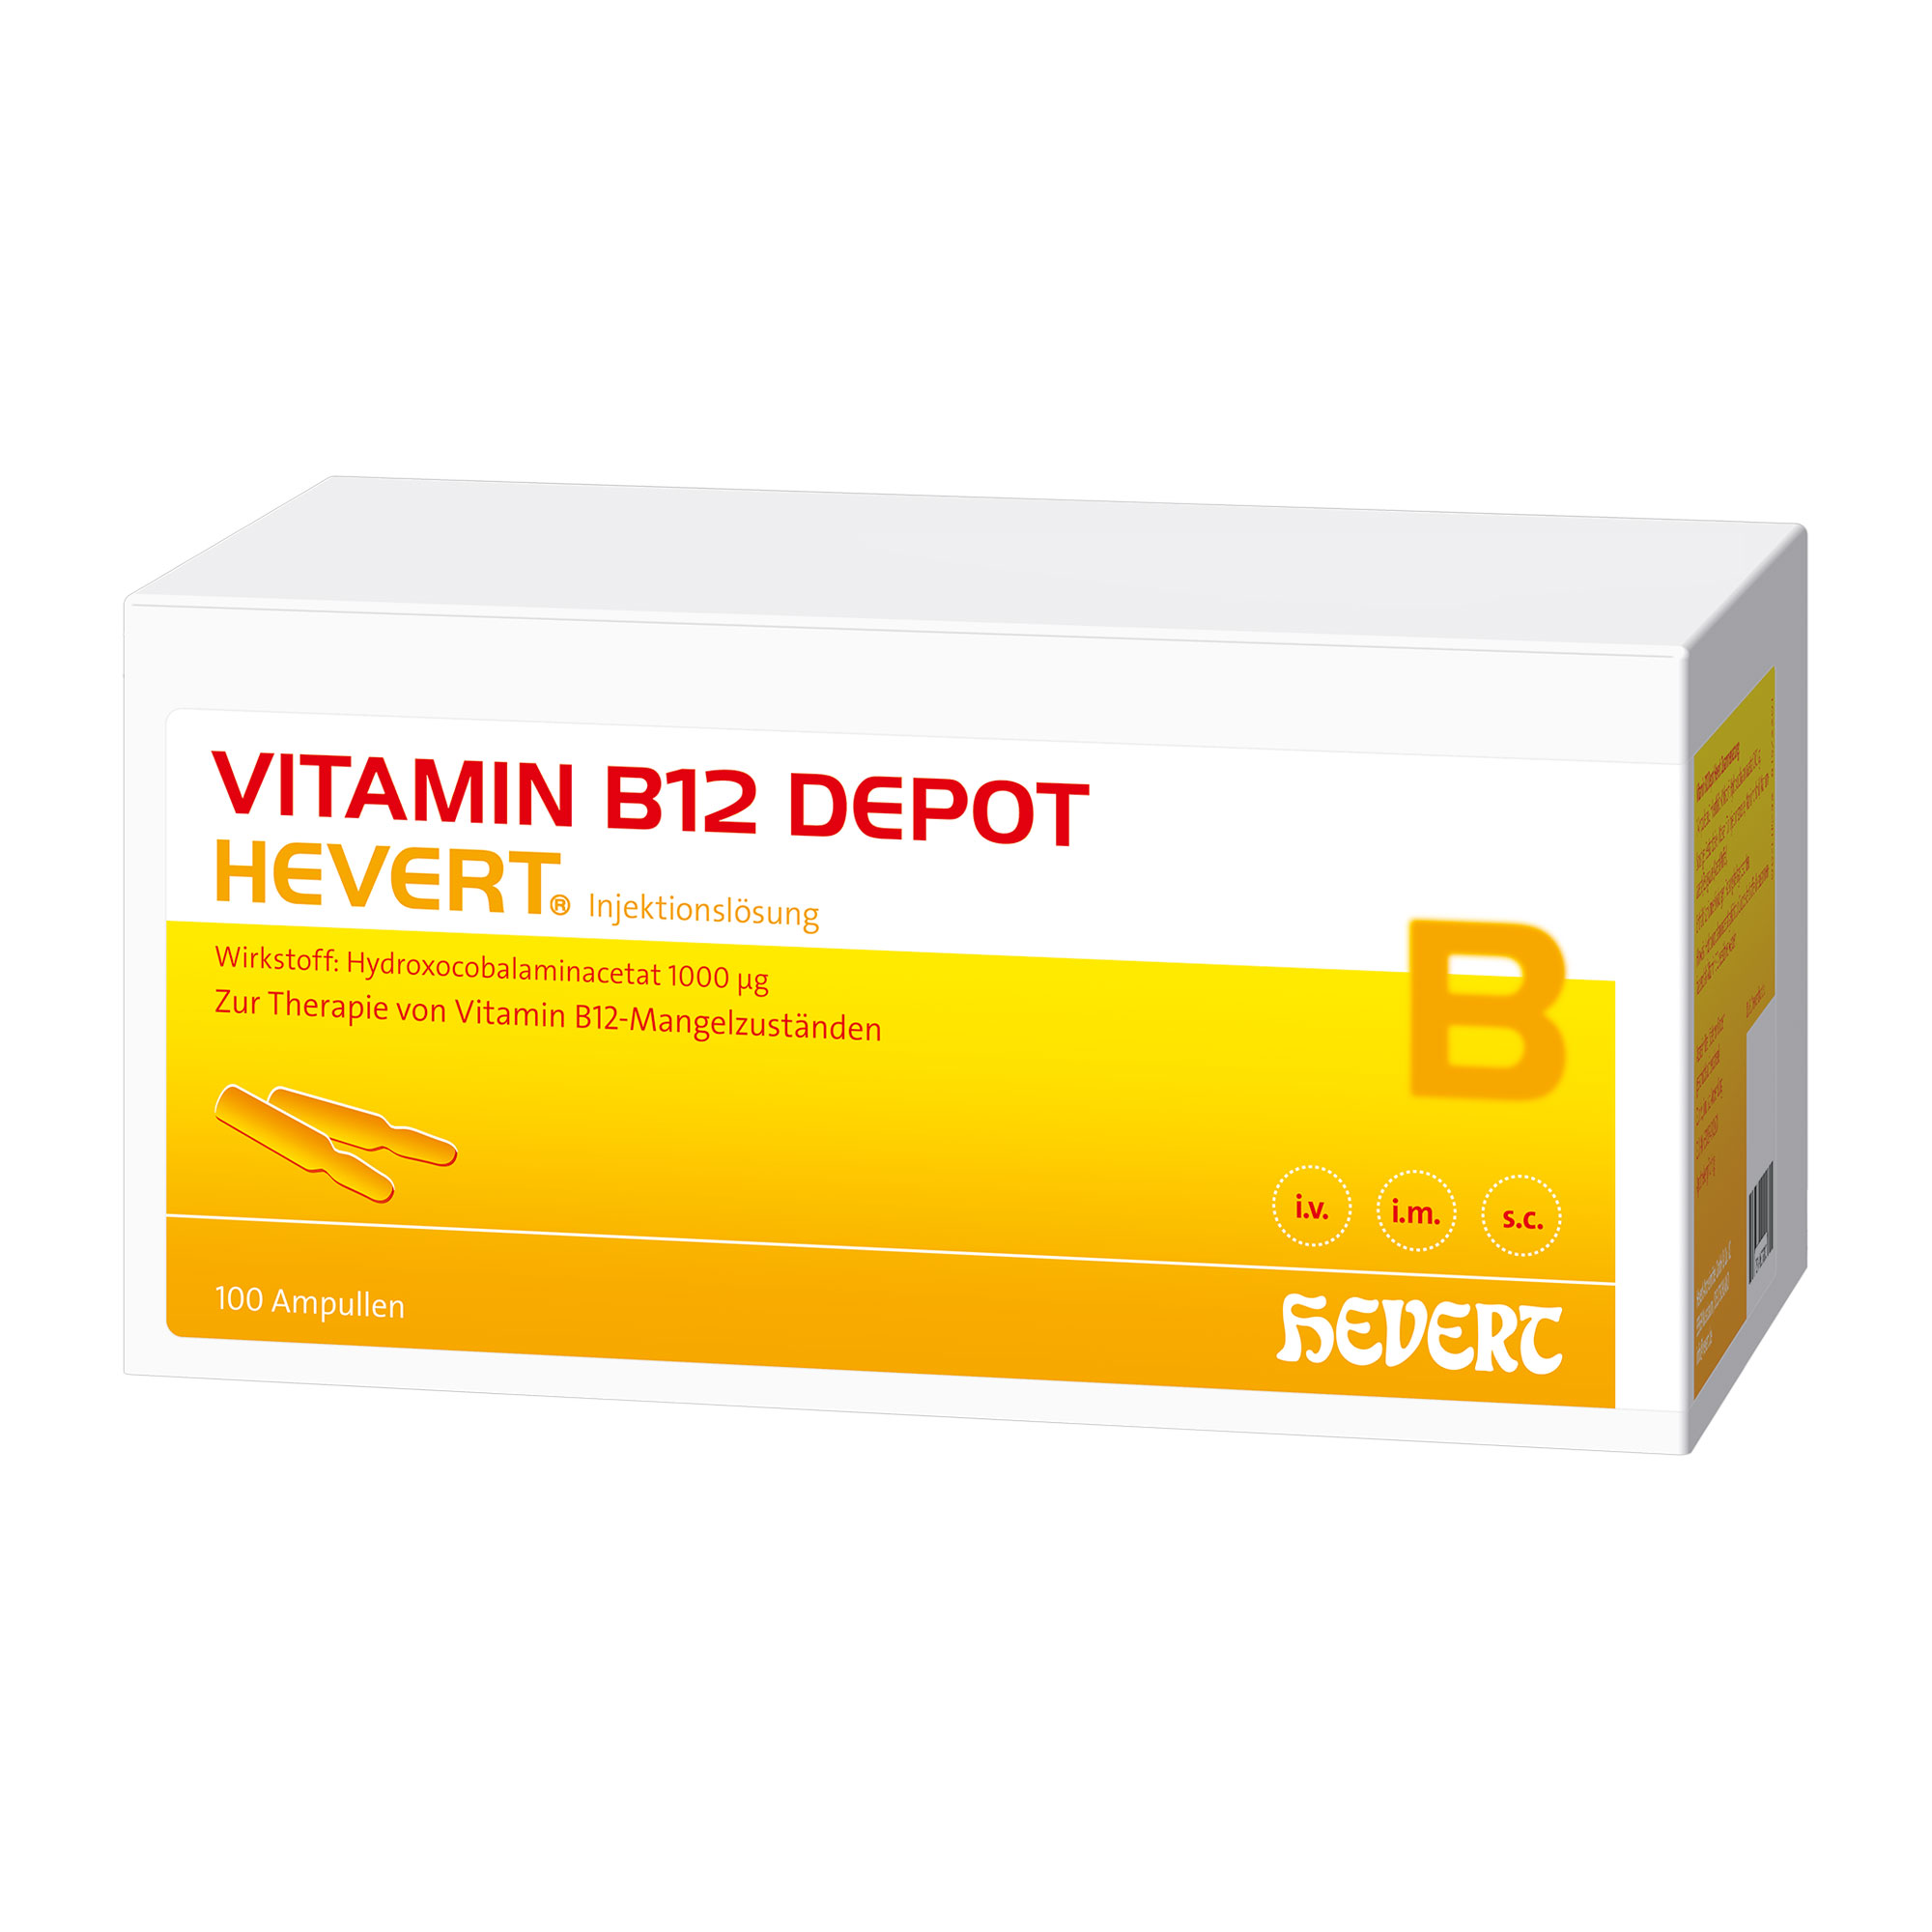 Vitaminpräparat bei Vitamin B12-Mangel, der ernährungsmäßig nicht behoben werden kann.